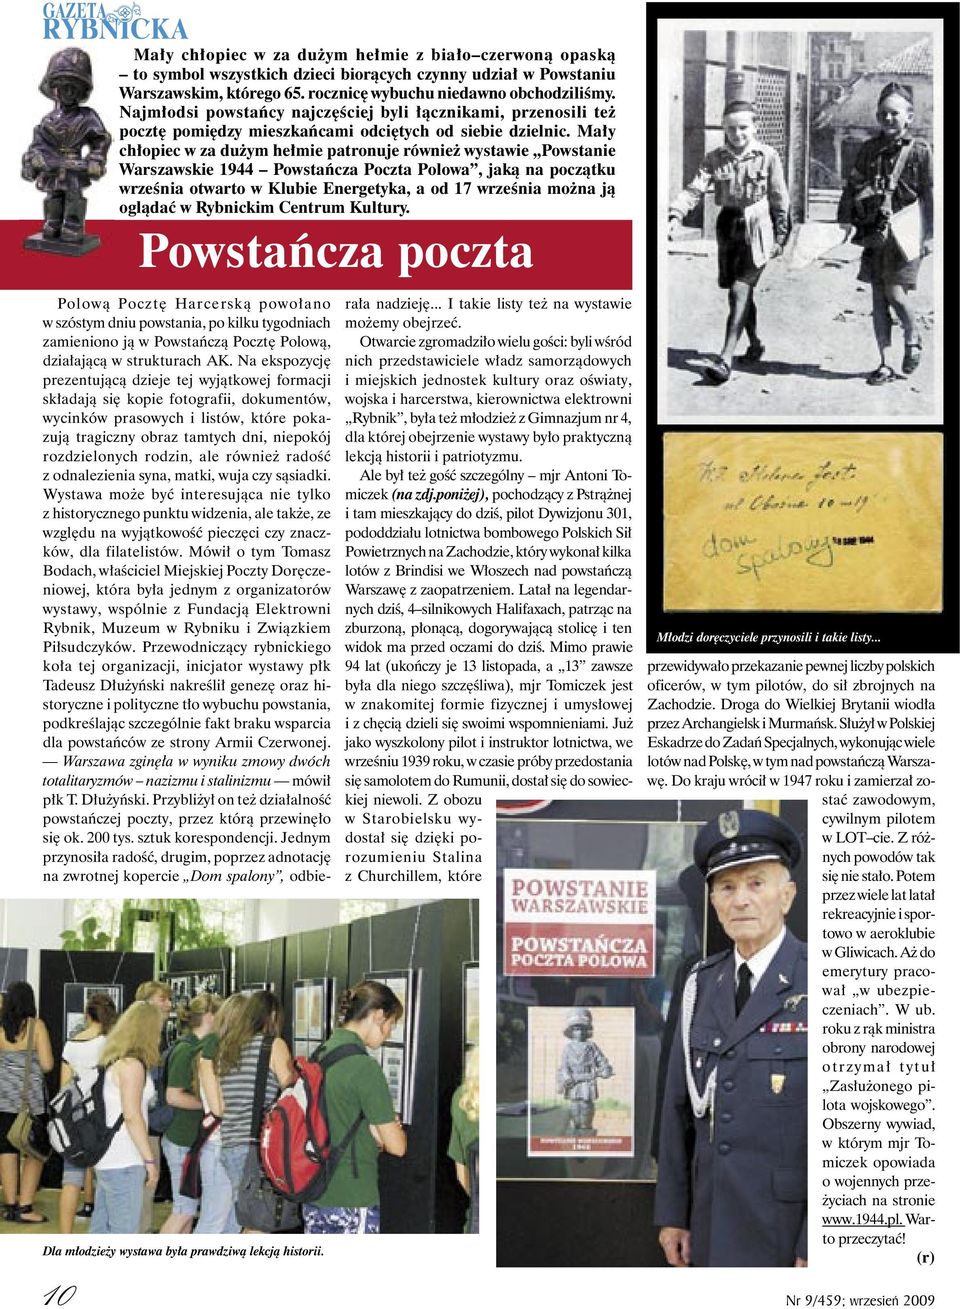 Mały chłopiec w za dużym hełmie patronuje również wystawie Powstanie Warszawskie 1944 Powstańcza Poczta Polowa, jaką na początku września otwarto w Klubie Energetyka, a od 17 września można ją